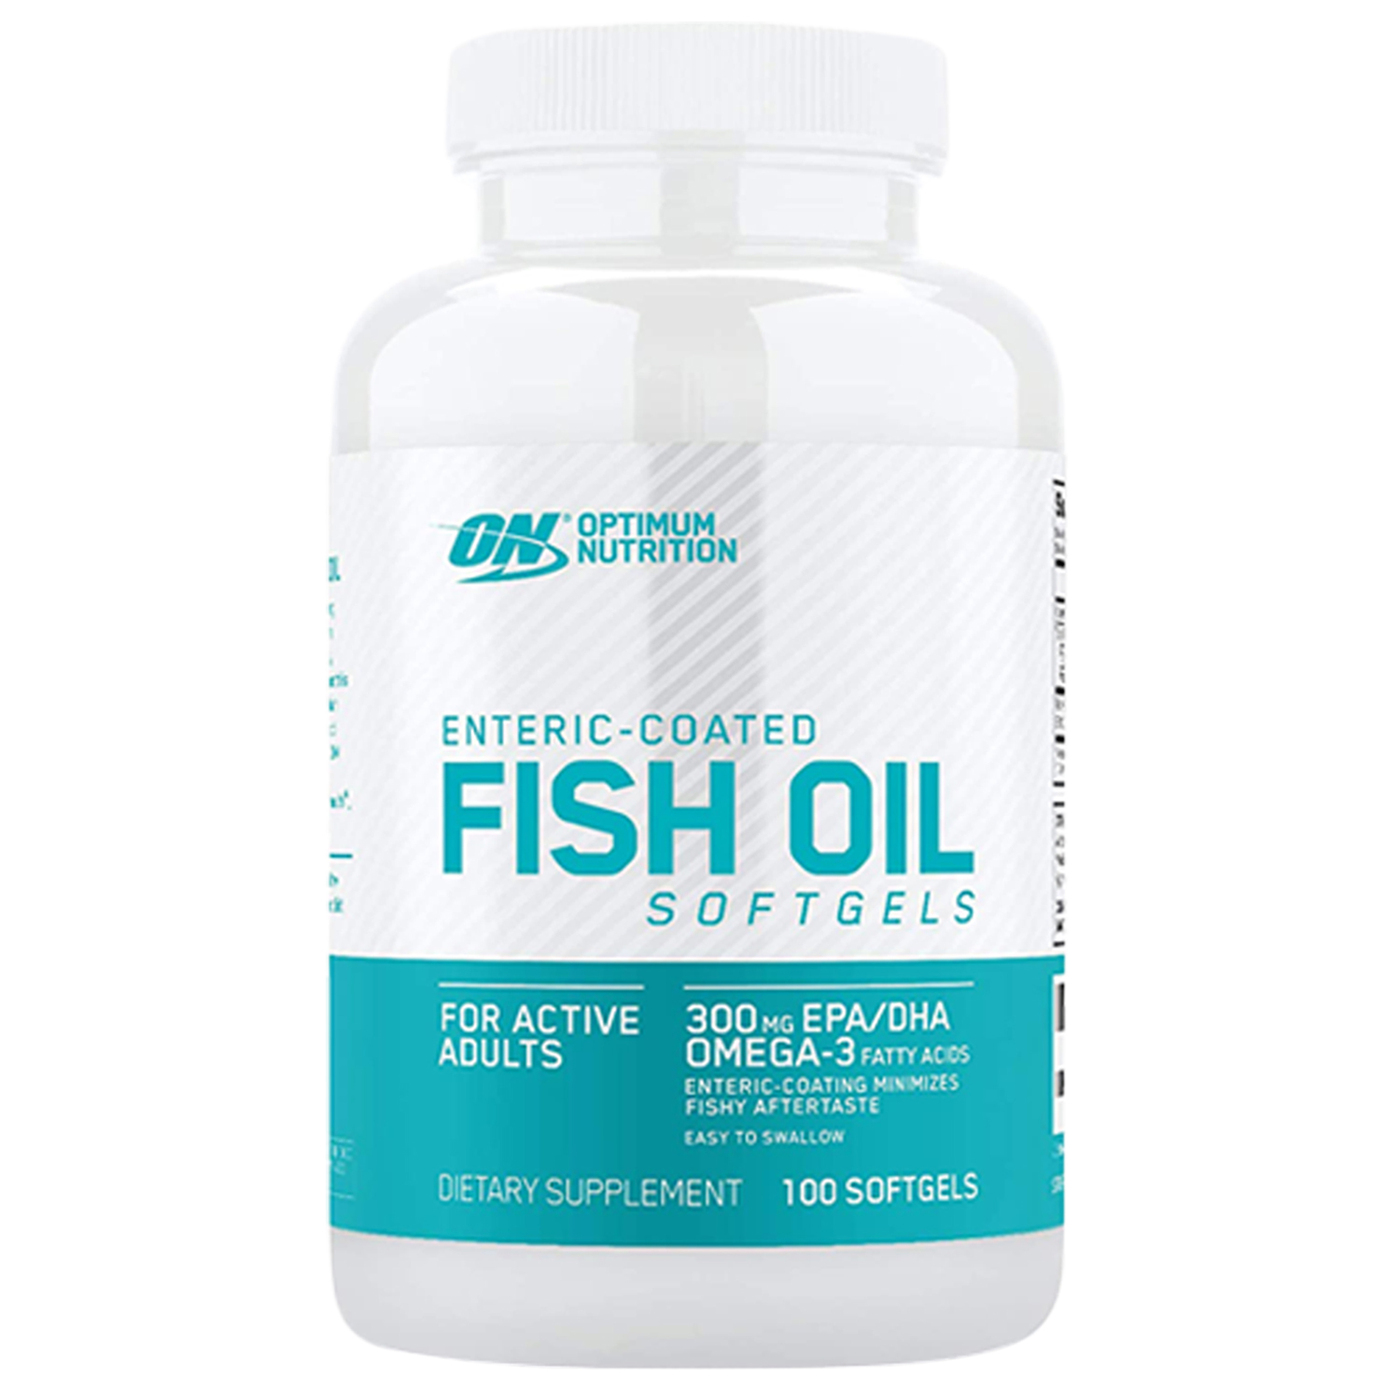 Optimum Nutrition Enteric Coated Fish Oil Softgels, 100 капс. Омега 3